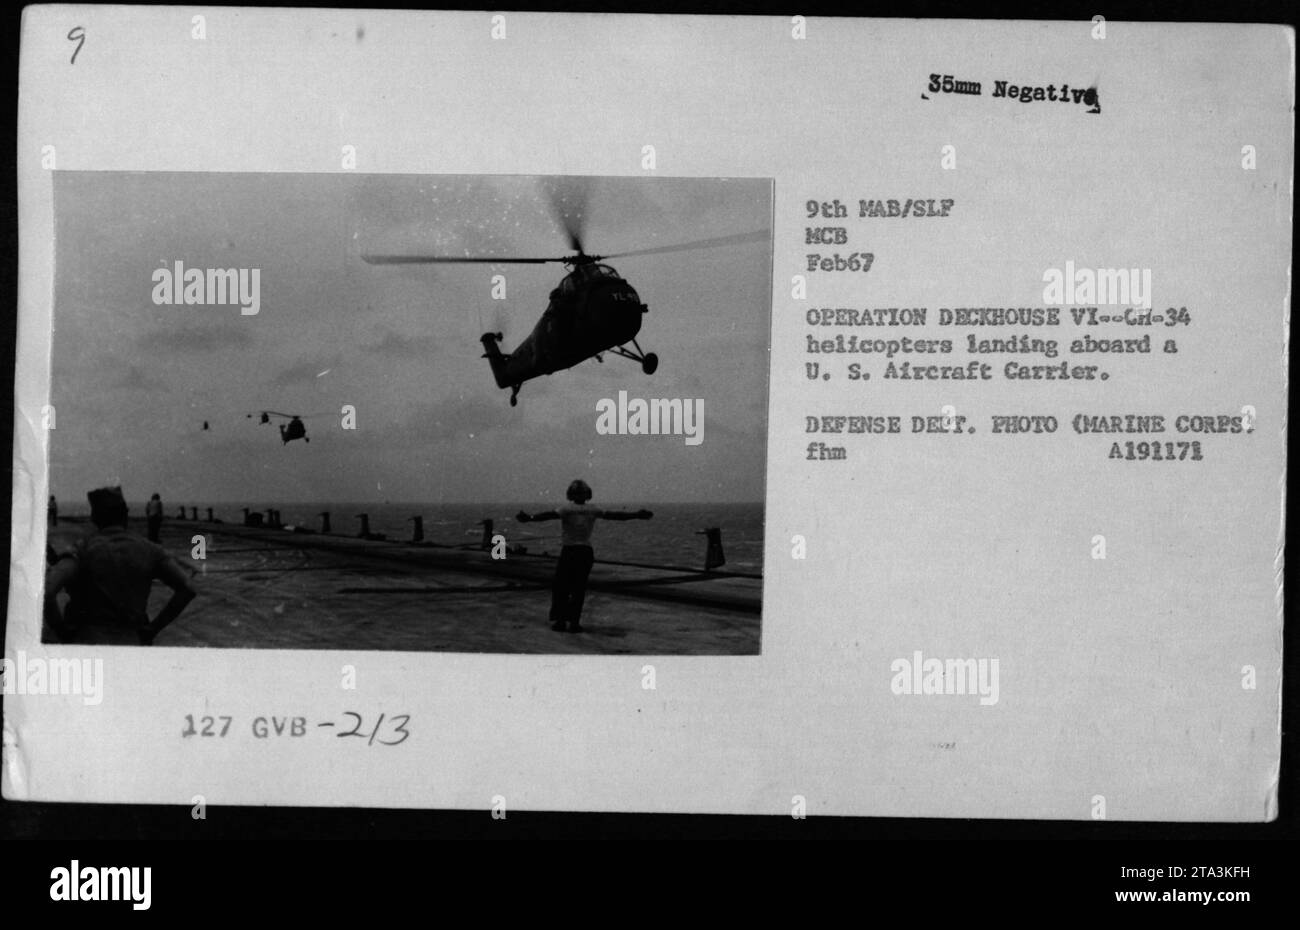 US-Marine-Hubschrauber landen auf einem Flugzeugträger während der Operation Deckhouse VI im Februar 1967. Dieses Foto zeigt einen Moment amerikanischer Militäraktivitäten während des Vietnamkriegs. Stockfoto